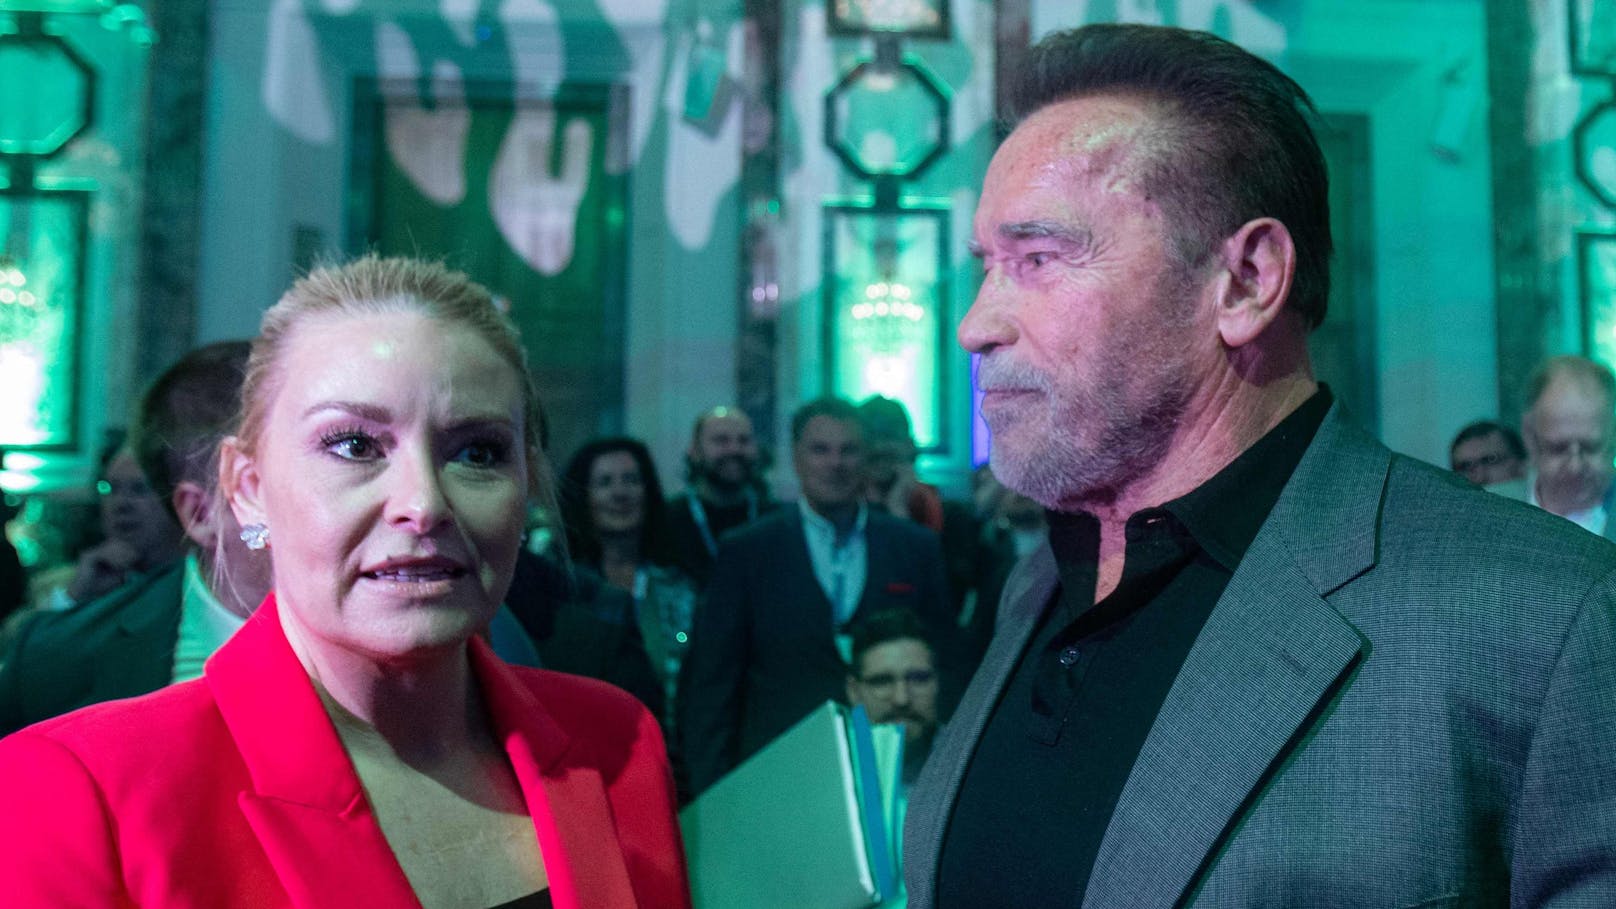 Arnie küsst fremde Frau – alles aus mit Heather?